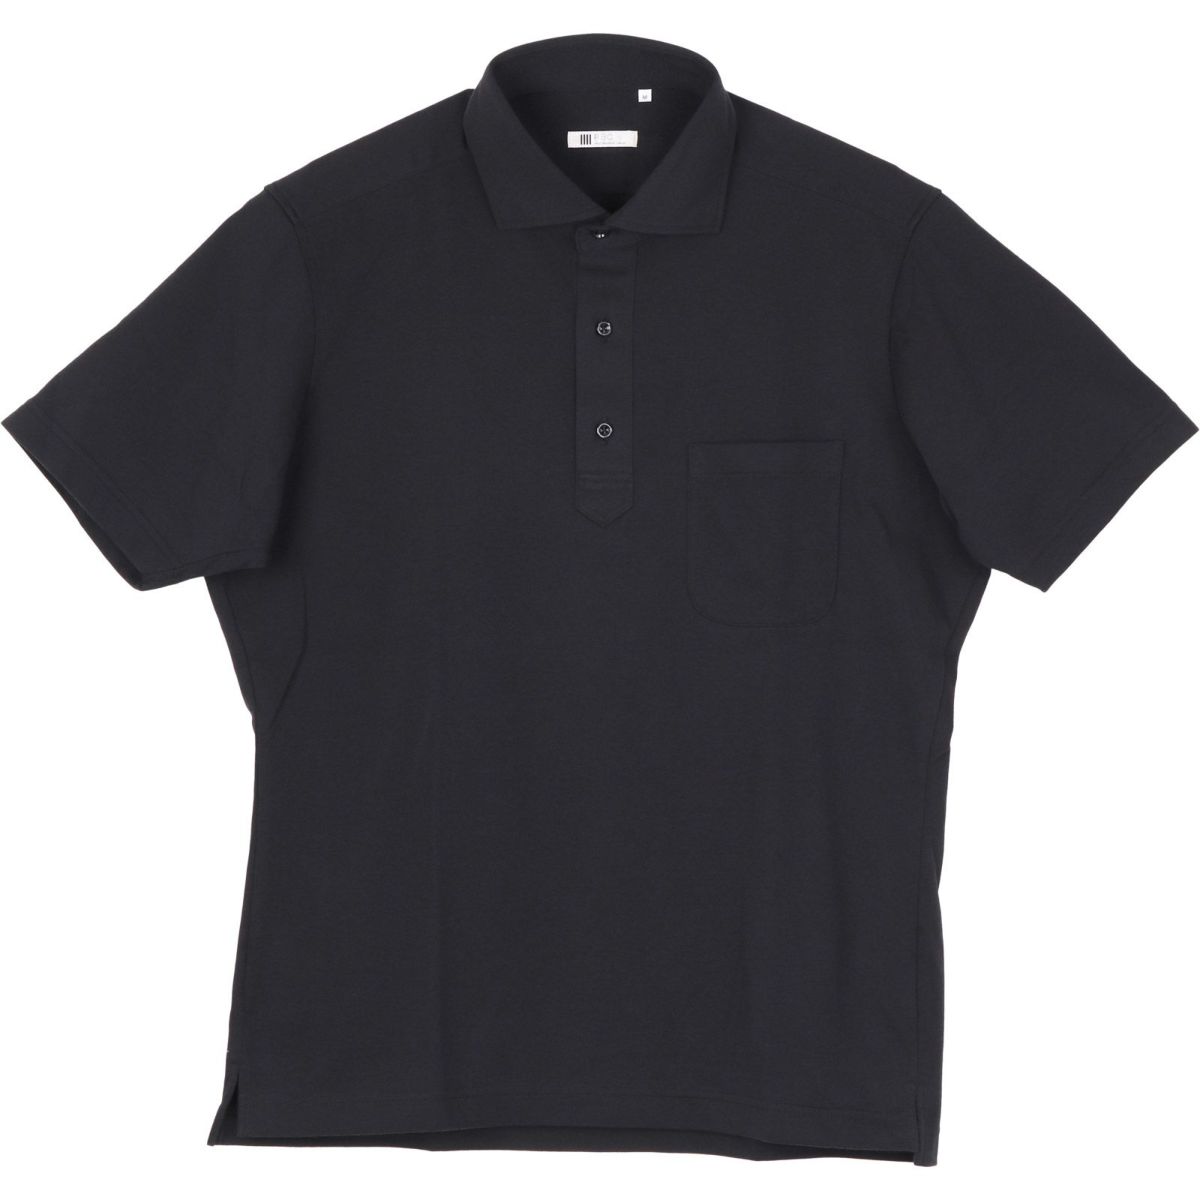 発送在庫あり Rbc クールビズパック Biz Polo Tシャツ パンツ ウオッシャブルネット 4点セット ブラック Suit Select スーツセレクト公式通販